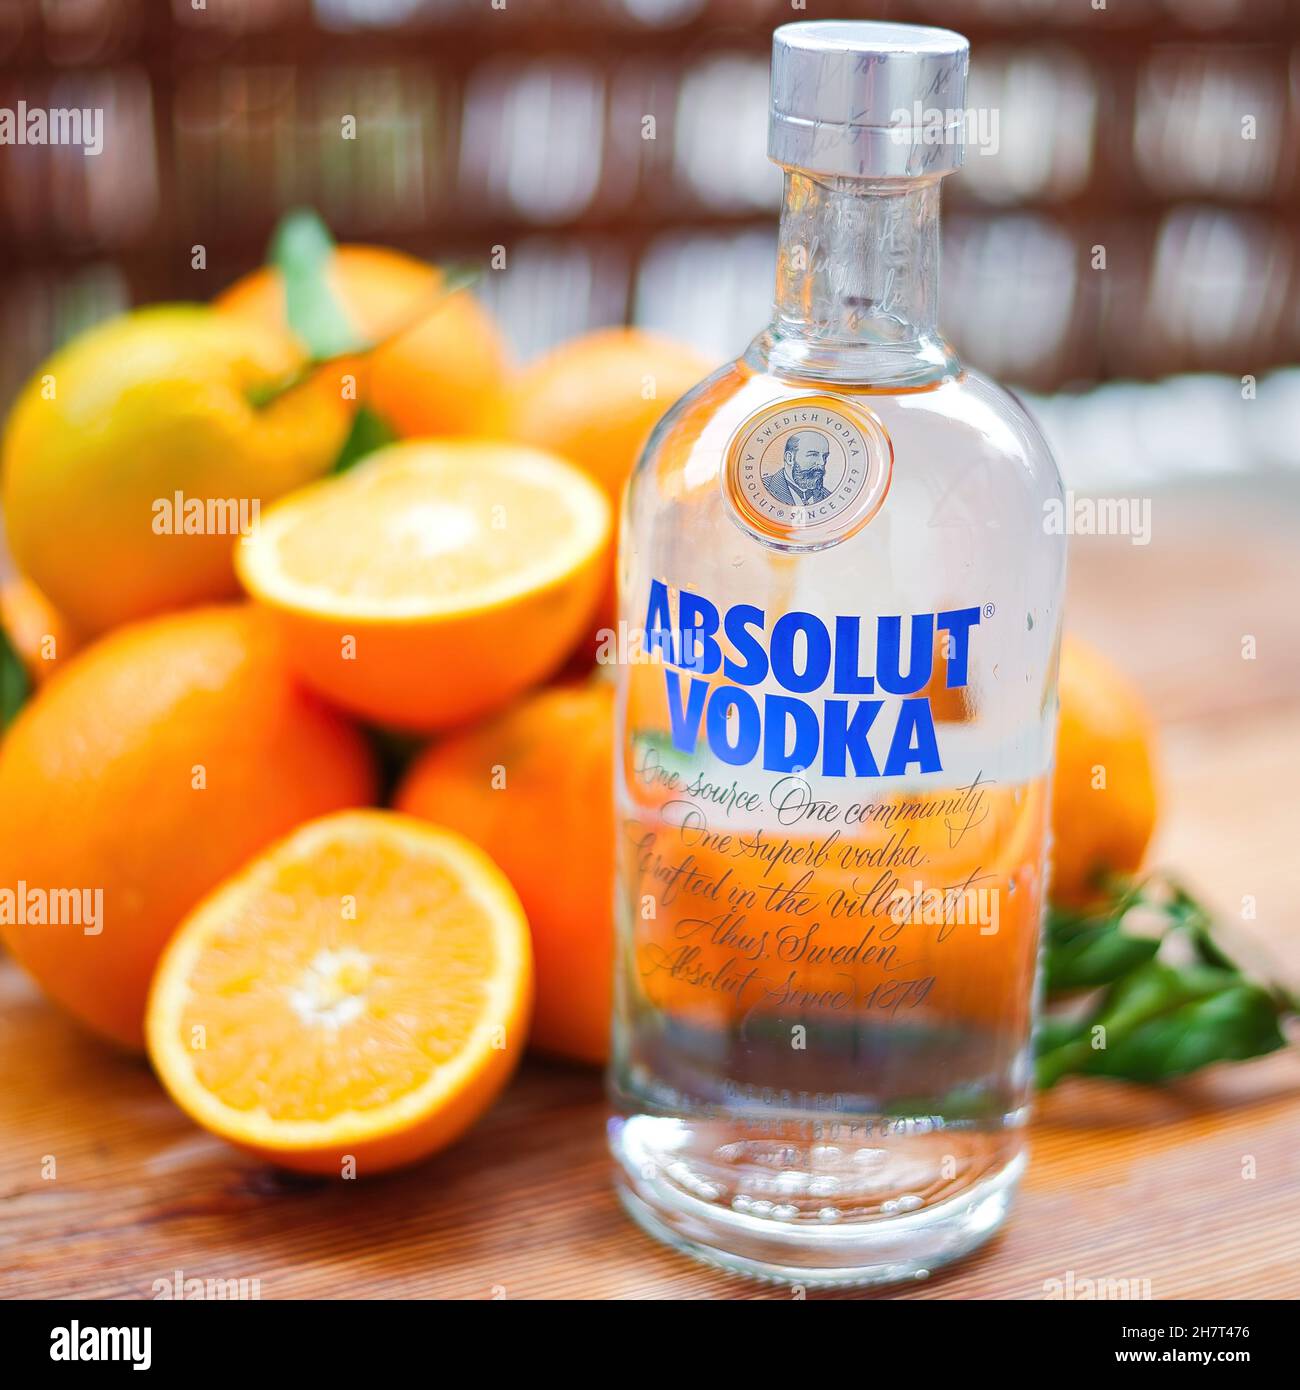 VOLOS, SCHWEDEN - 24. Nov 2021: Flasche absolut Vodka, eine in Schweden  hergestellte Qualitätsmarke von Wodka. Wodka mit Orange auf einem  Holzhintergrund. Volos, G Stockfotografie - Alamy